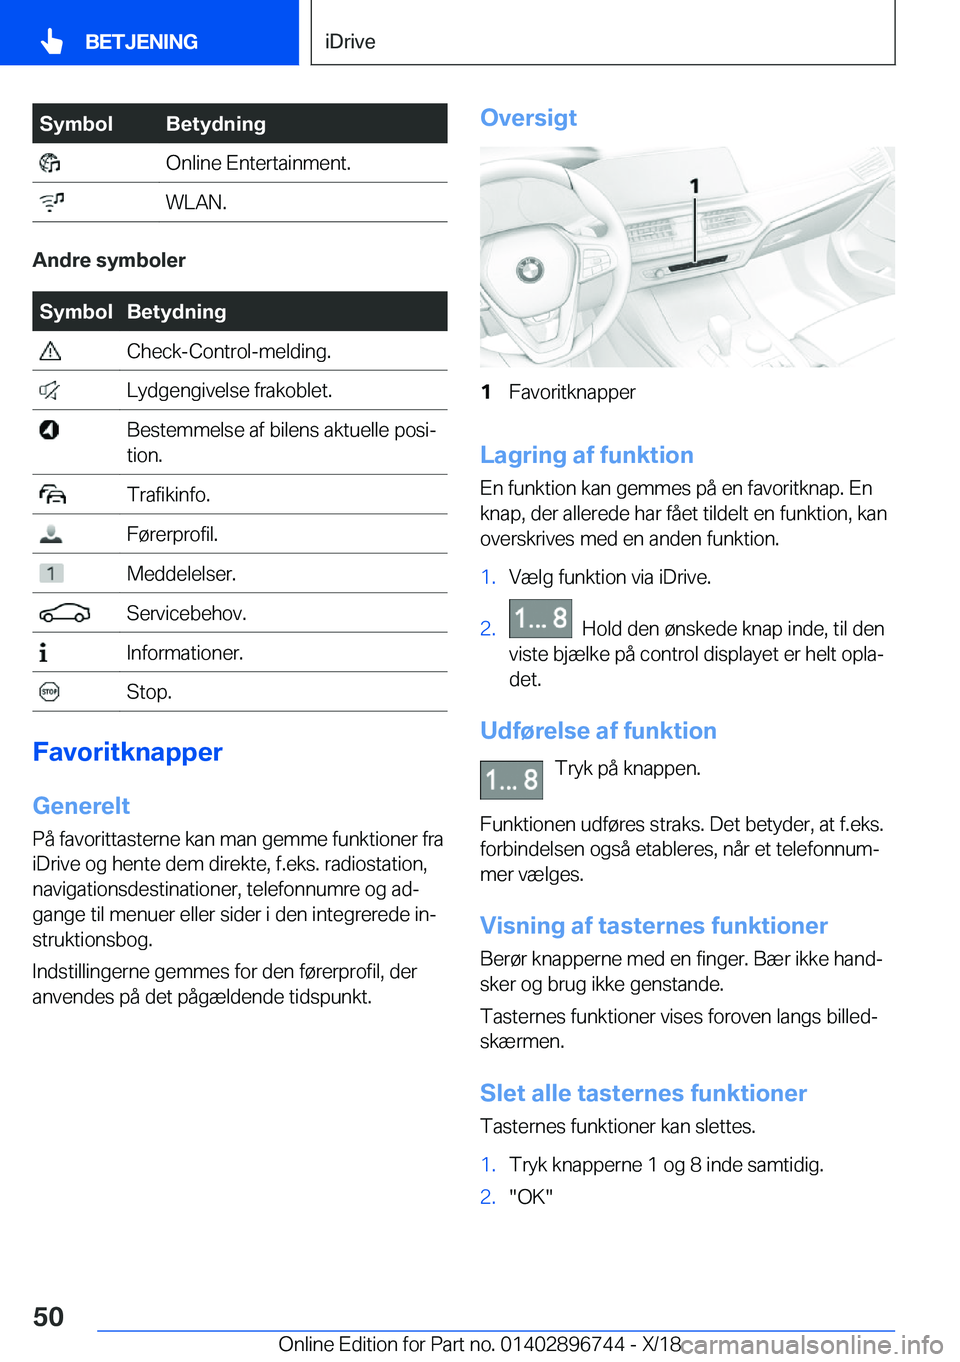 BMW X5 2019  InstruktionsbØger (in Danish) �S�y�m�b�o�l�B�e�t�y�d�n�i�n�g��O�n�l�i�n�e��E�n�t�e�r�t�a�i�n�m�e�n�t�.��W�L�A�N�.
�A�n�d�r�e��s�y�m�b�o�l�e�r
�S�y�m�b�o�l�B�e�t�y�d�n�i�n�g��C�h�e�c�k�-�C�o�n�t�r�o�l�-�m�e�l�d�i�n�g�.��L�y�d